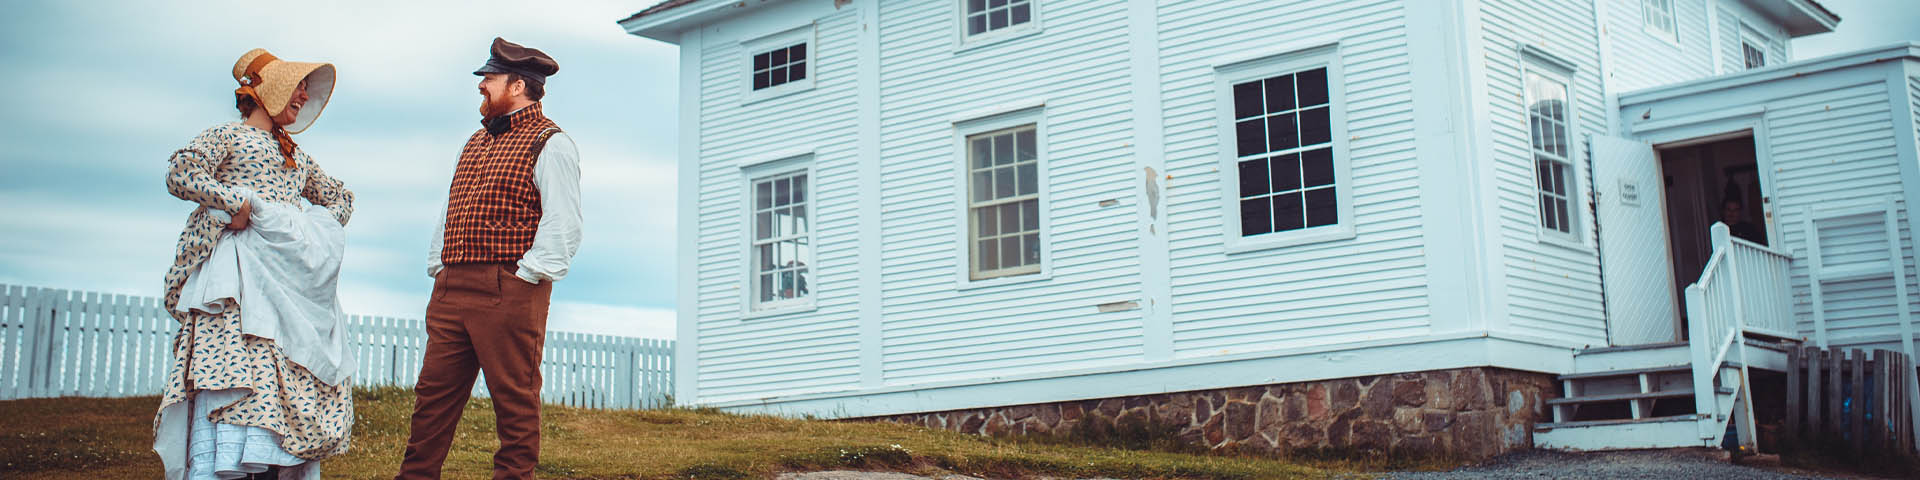 deux individus en costume historique, riant à l'extérieur d'une maison blanche en bois.